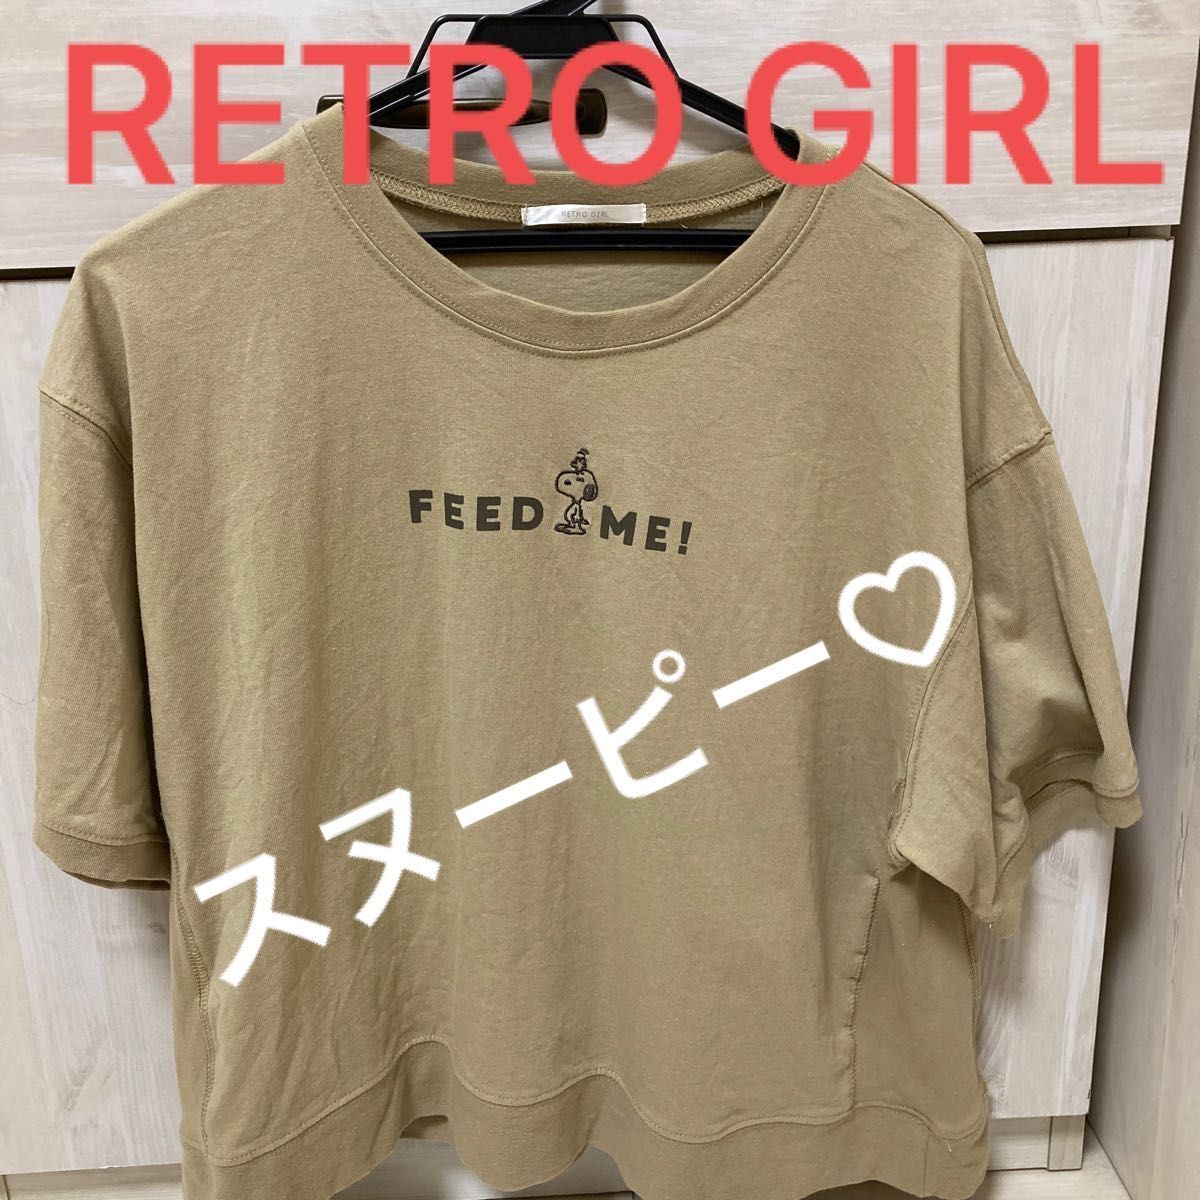 レトロガール RETRO GIRL レトロギャラリー スヌーピー 半袖 Tシャツ ロゴ 刺繍 トップス